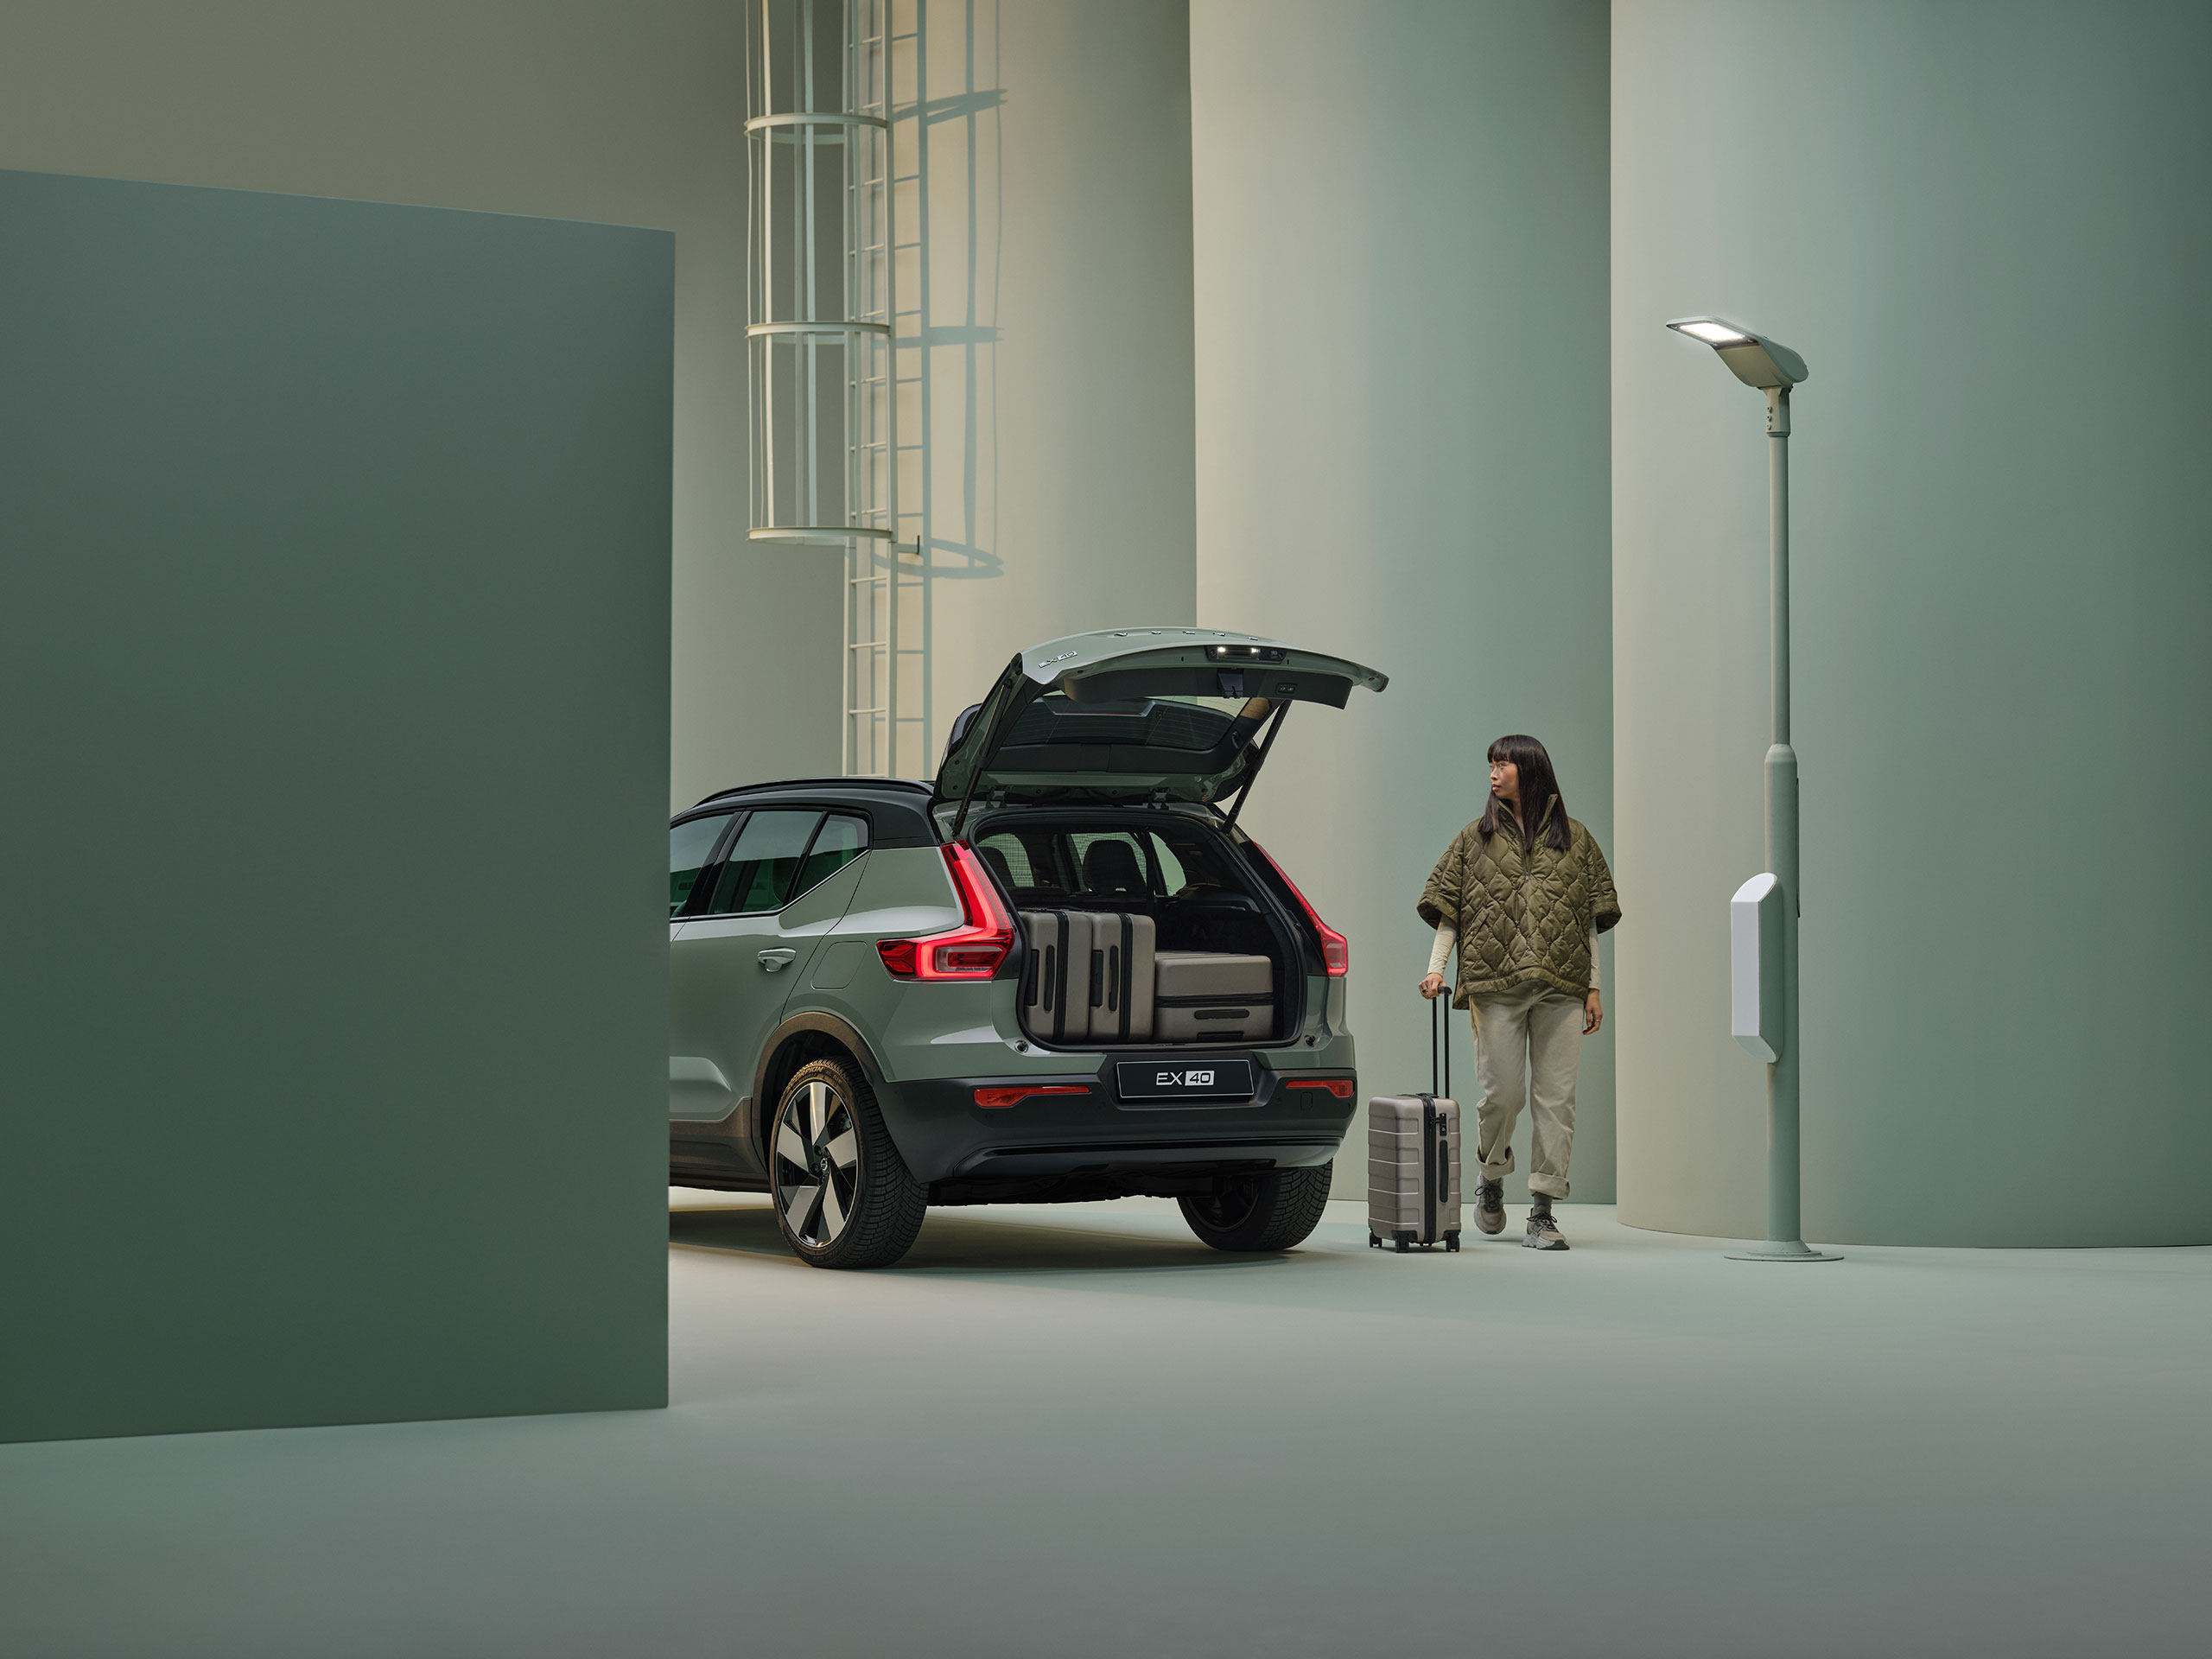 Volvo EX40 สีเขียวอมเทาพร้อมประตูท้ายที่เปิดอยู่ และมีกระเป๋าเดินทางอยู่ด้านใน